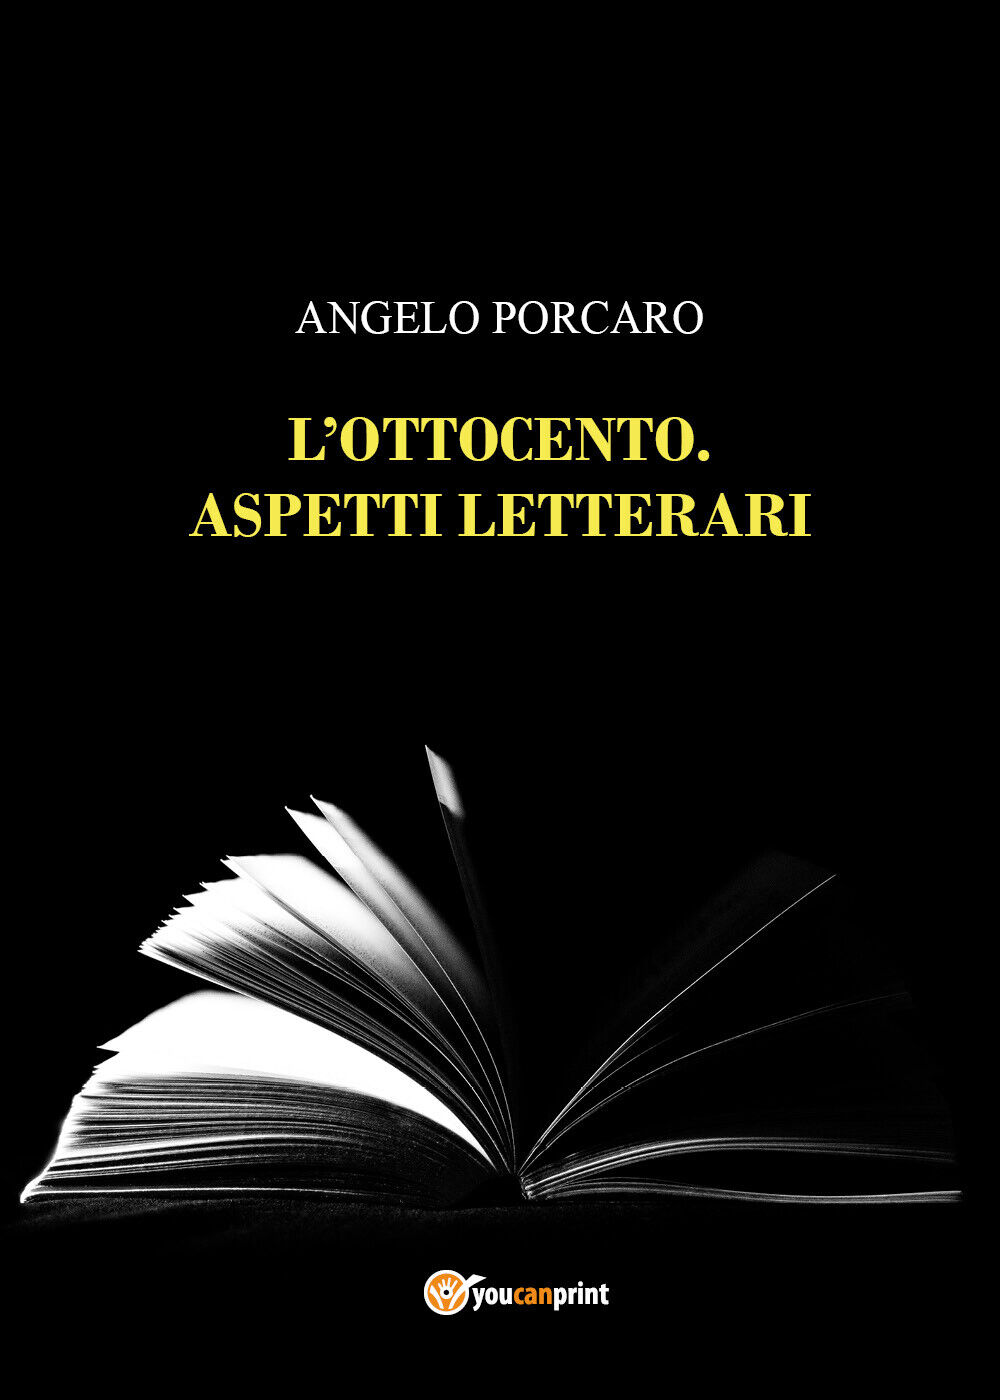 L'Ottocento. Aspetti letterari di Angelo Porcaro,  2022,  Youcanprint